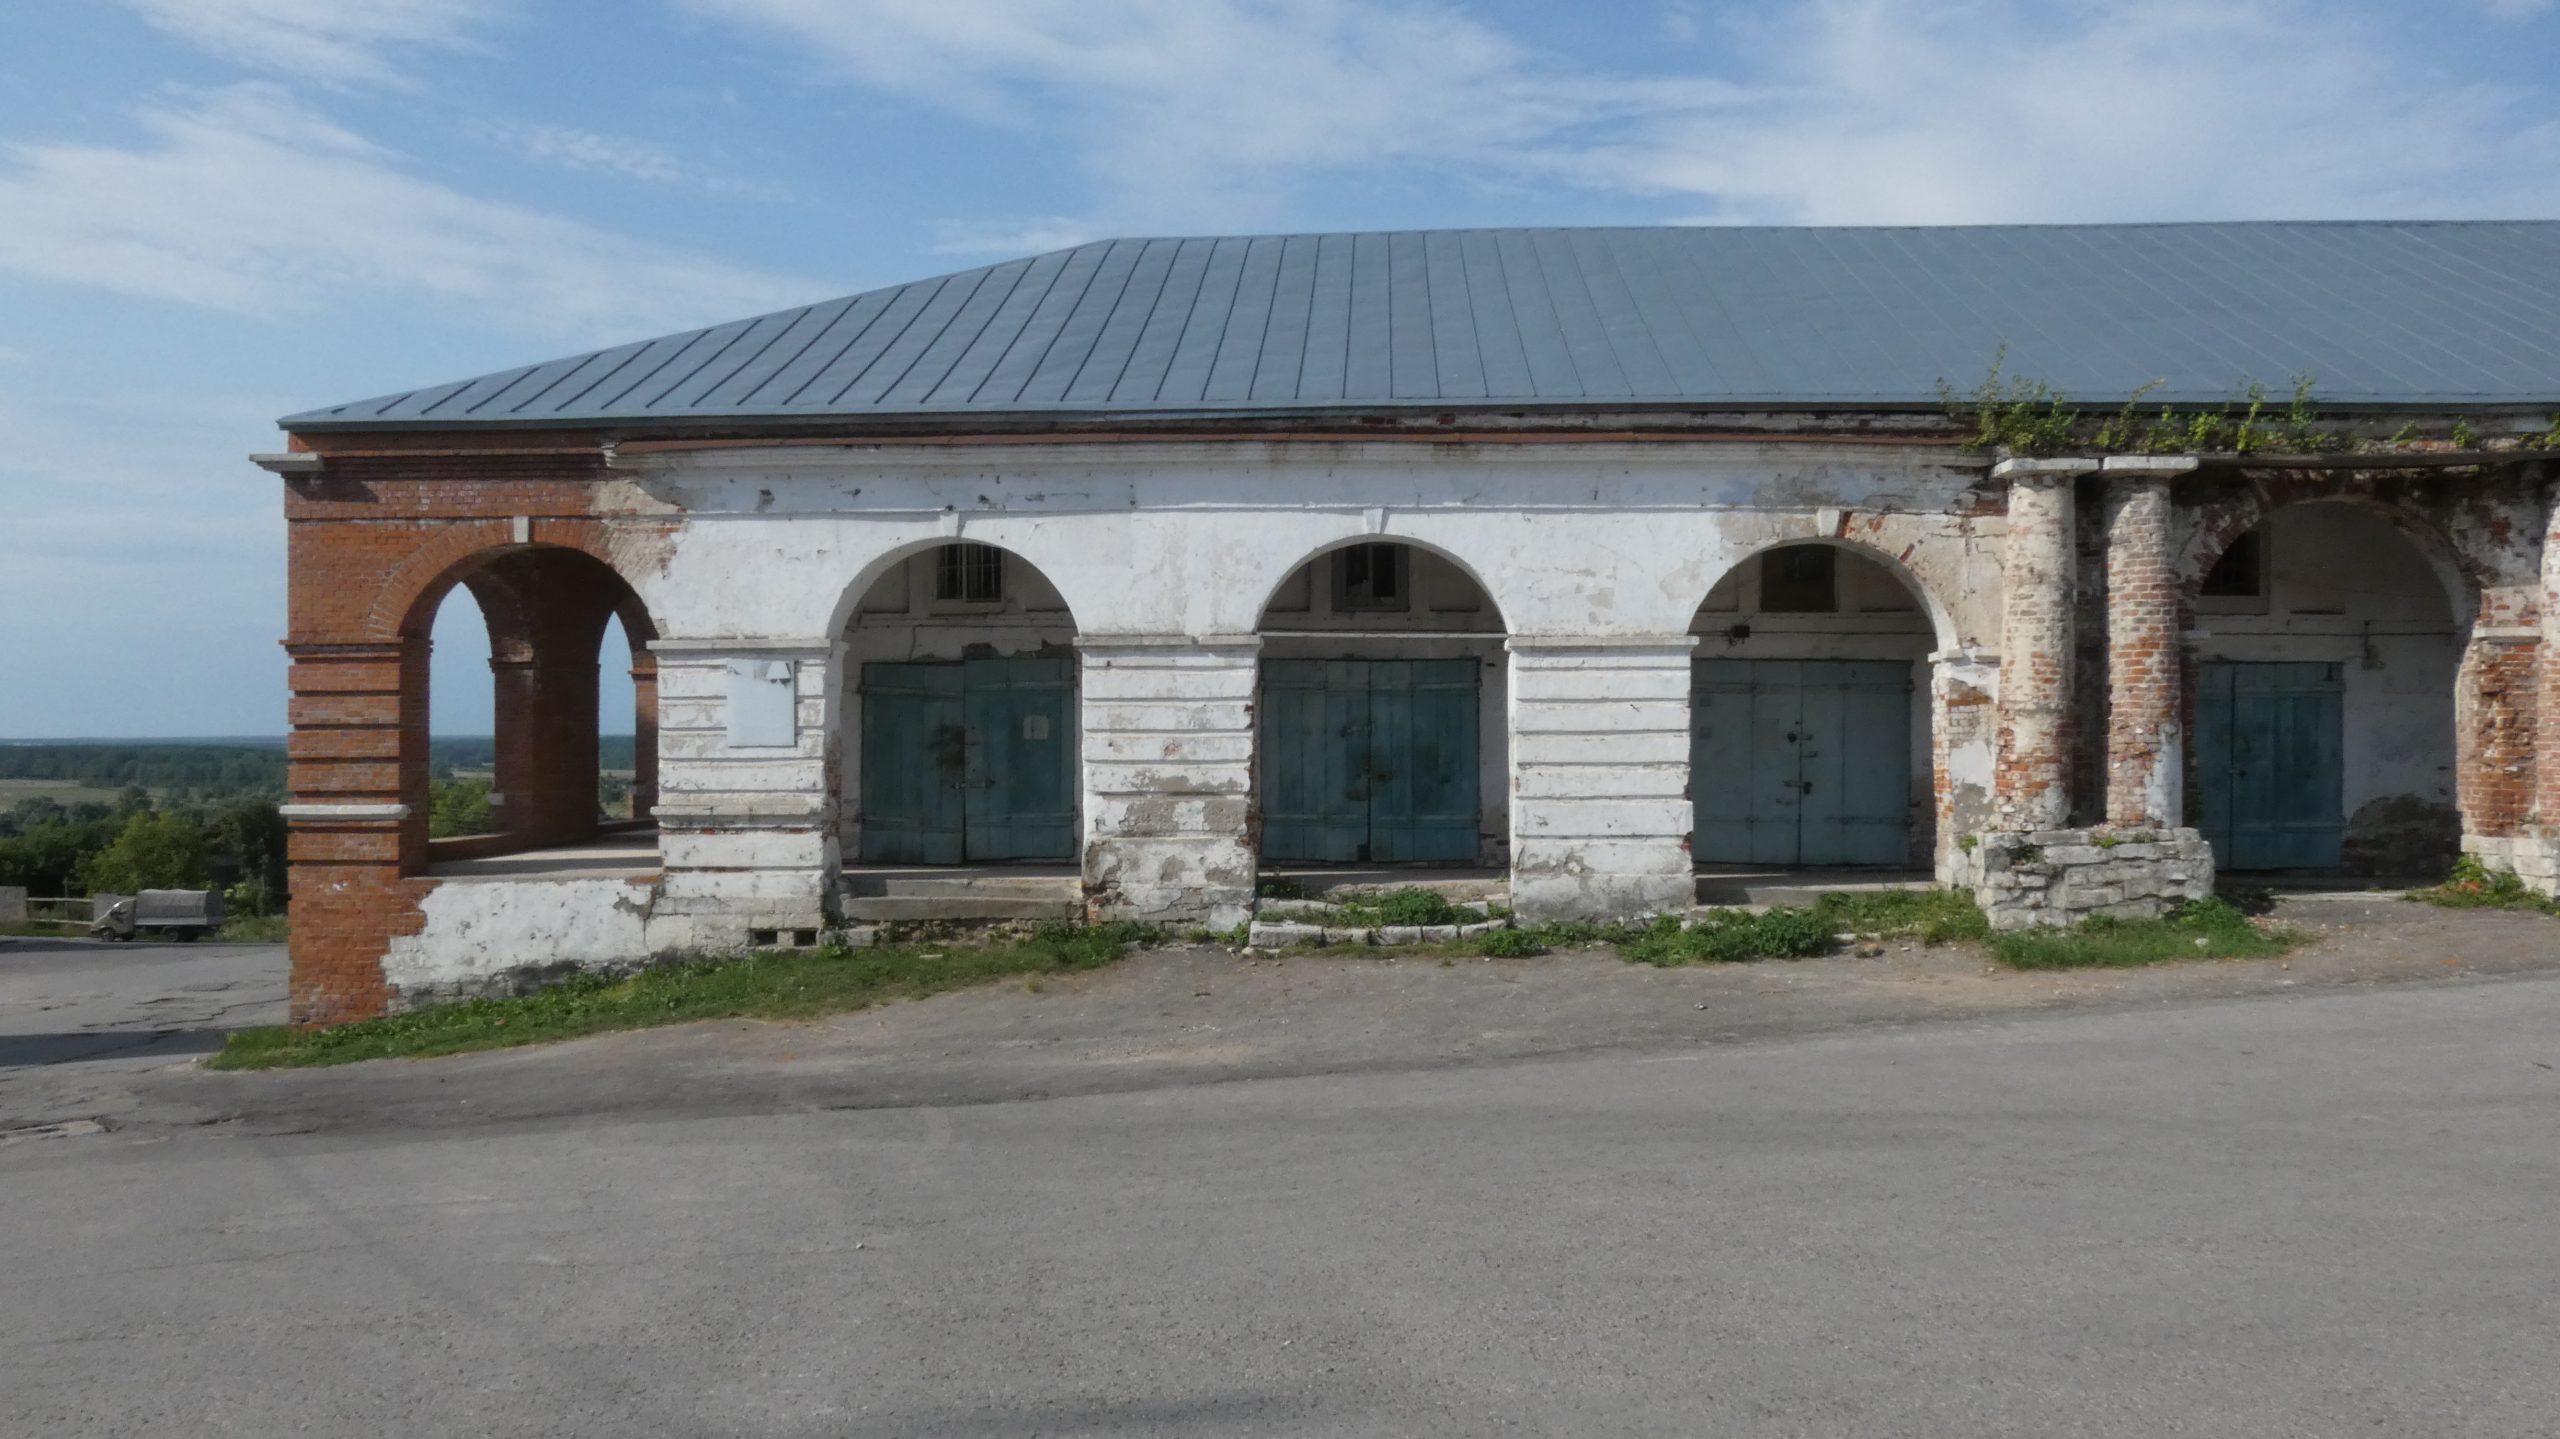 Гостиный двор Касимова. Строили или восстанавливали?